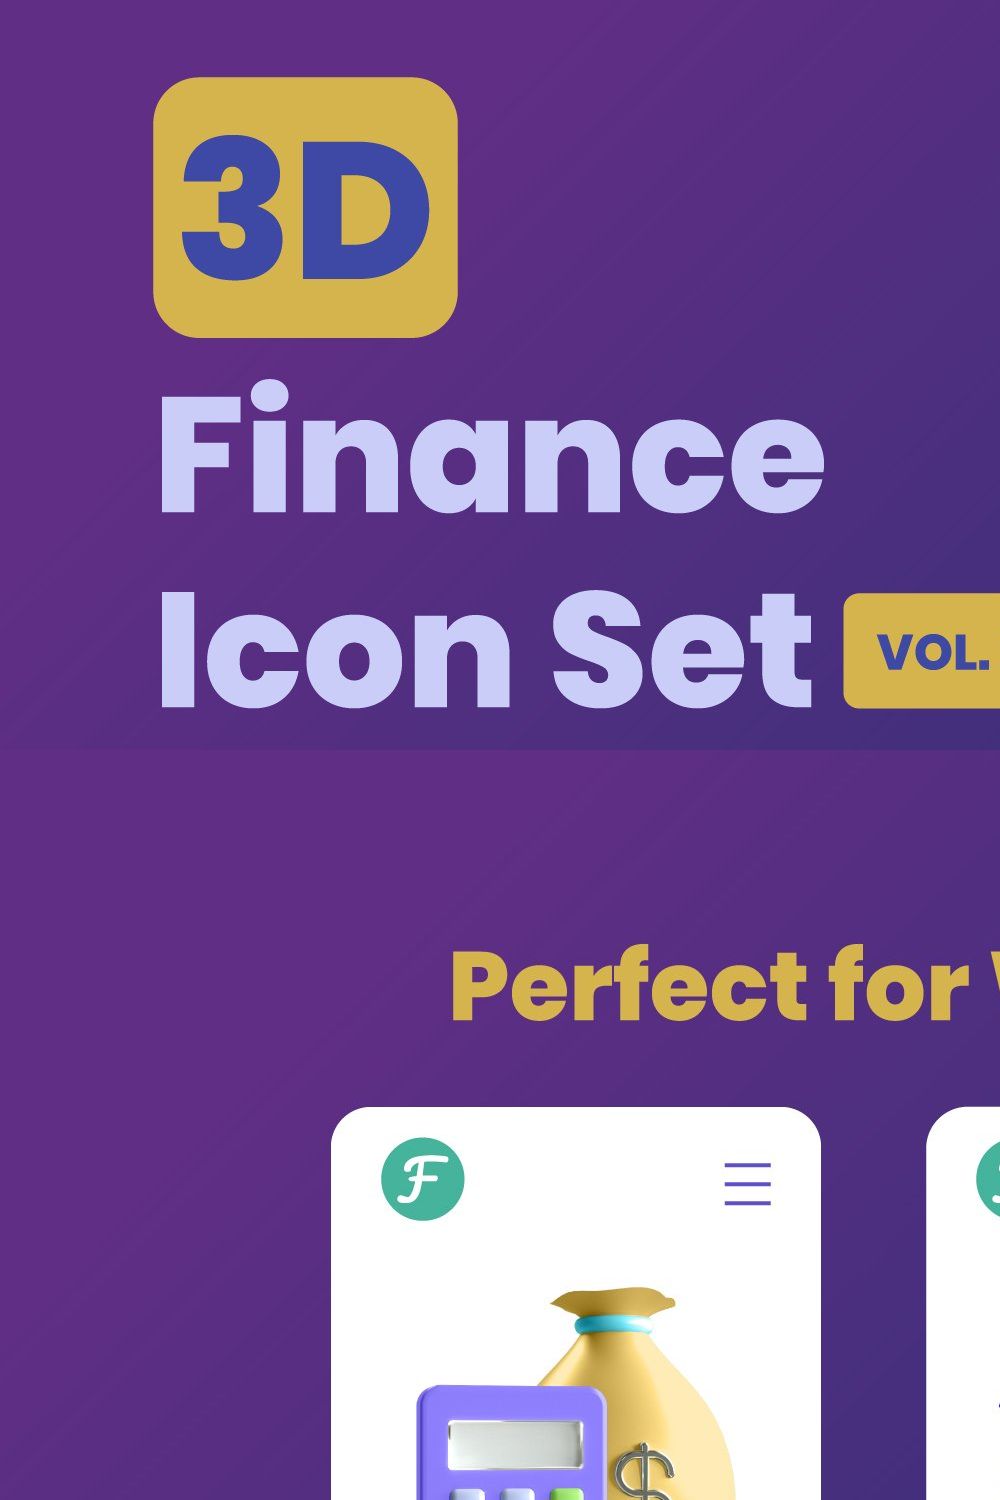 3D Finance Icon Set - Vol 2 pinterest preview image.